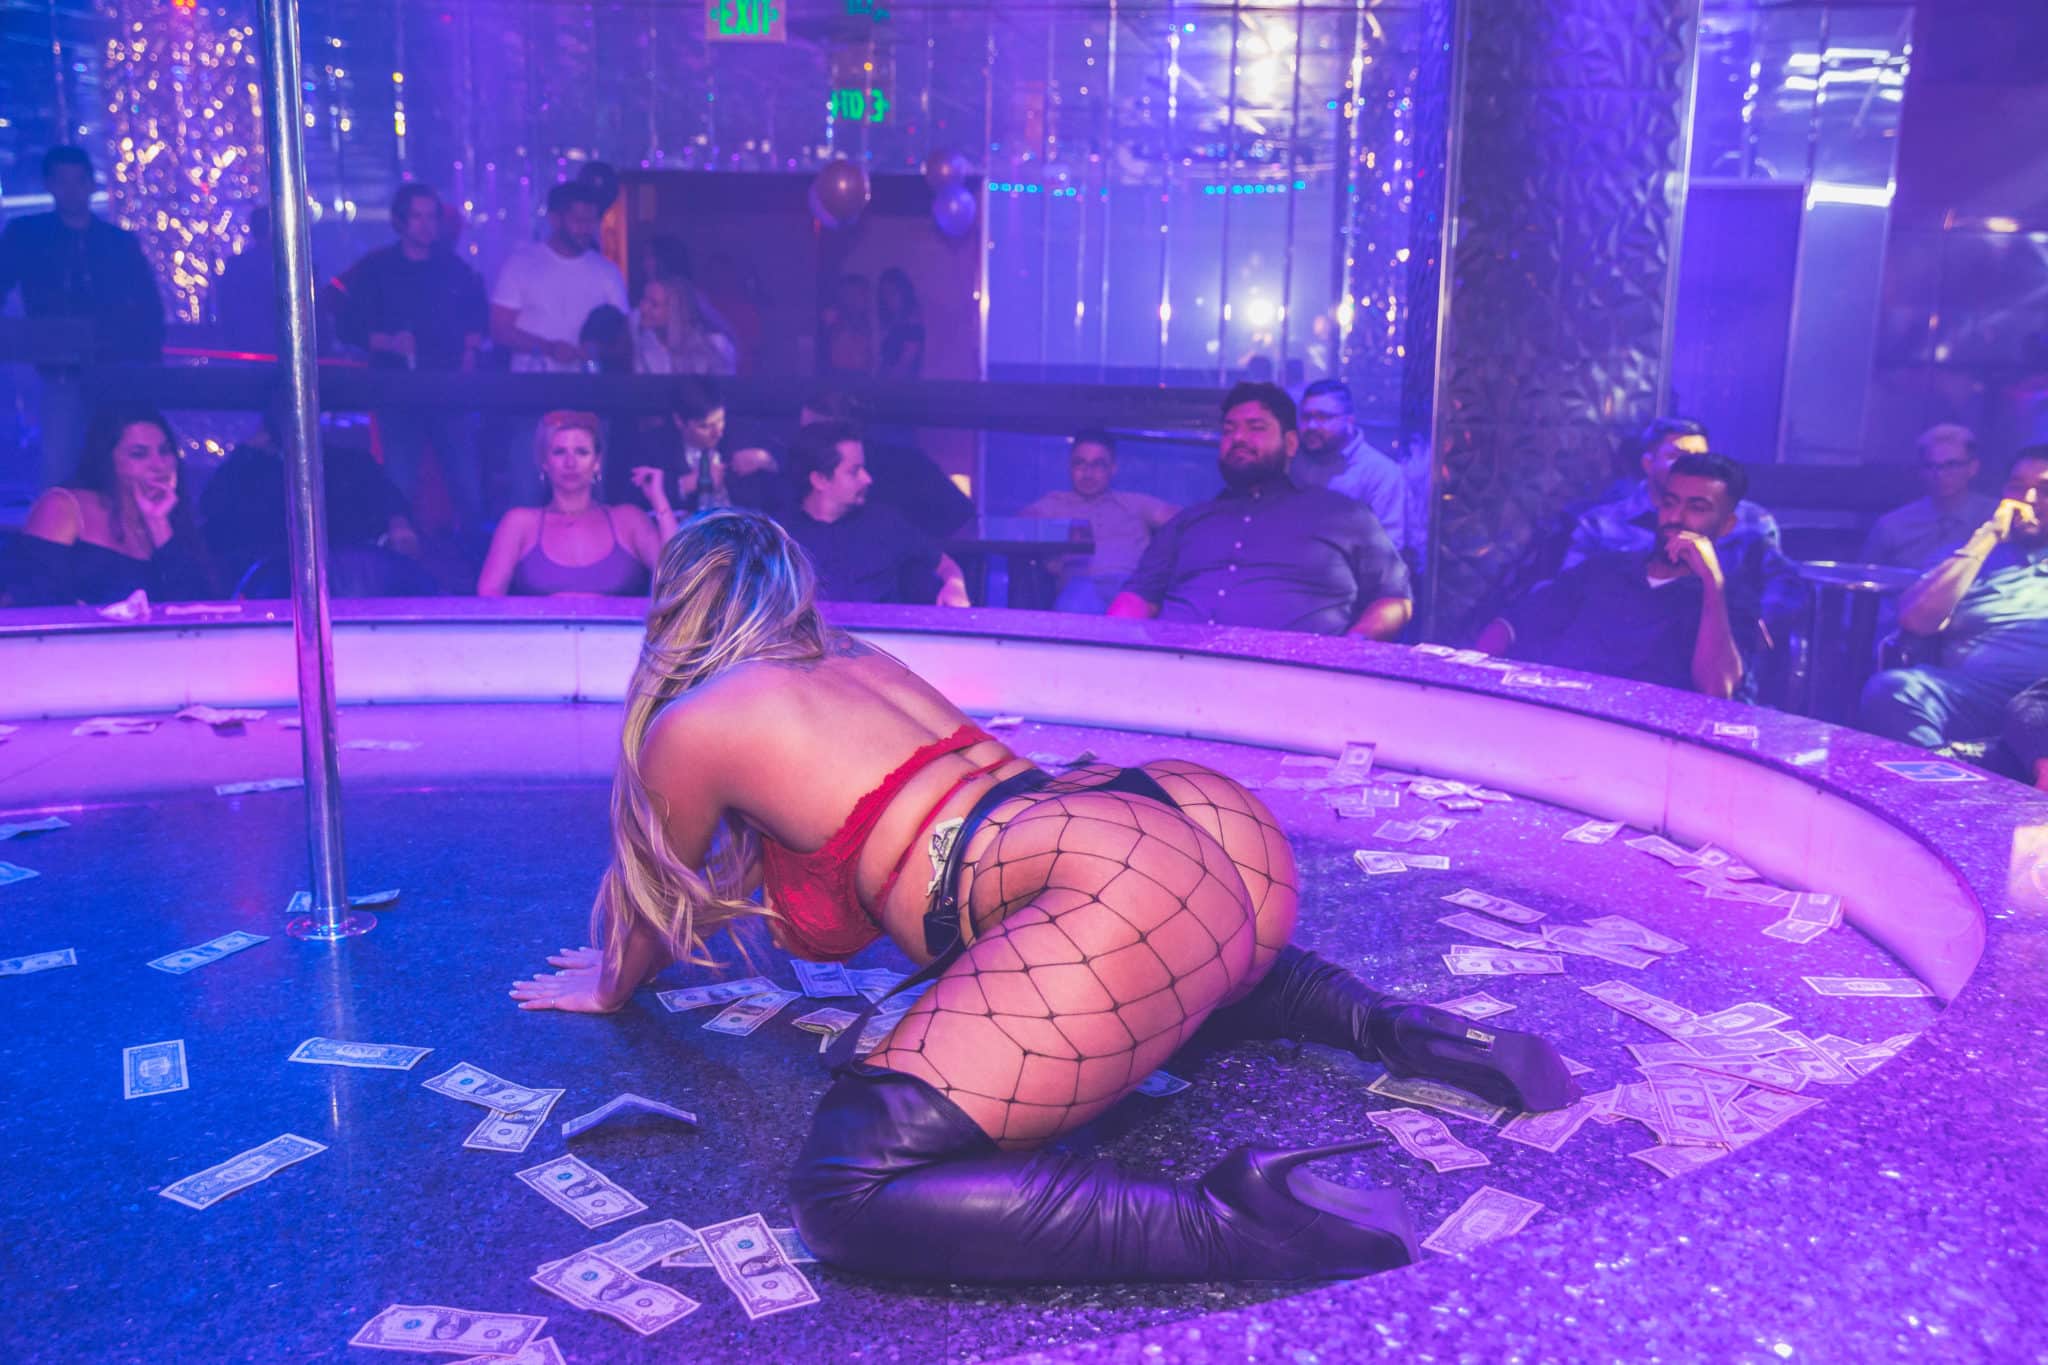 Bar Strip Nude - Full Nude Vs Full Bar Strip Clubs | Larry Flynt's Hustler Club